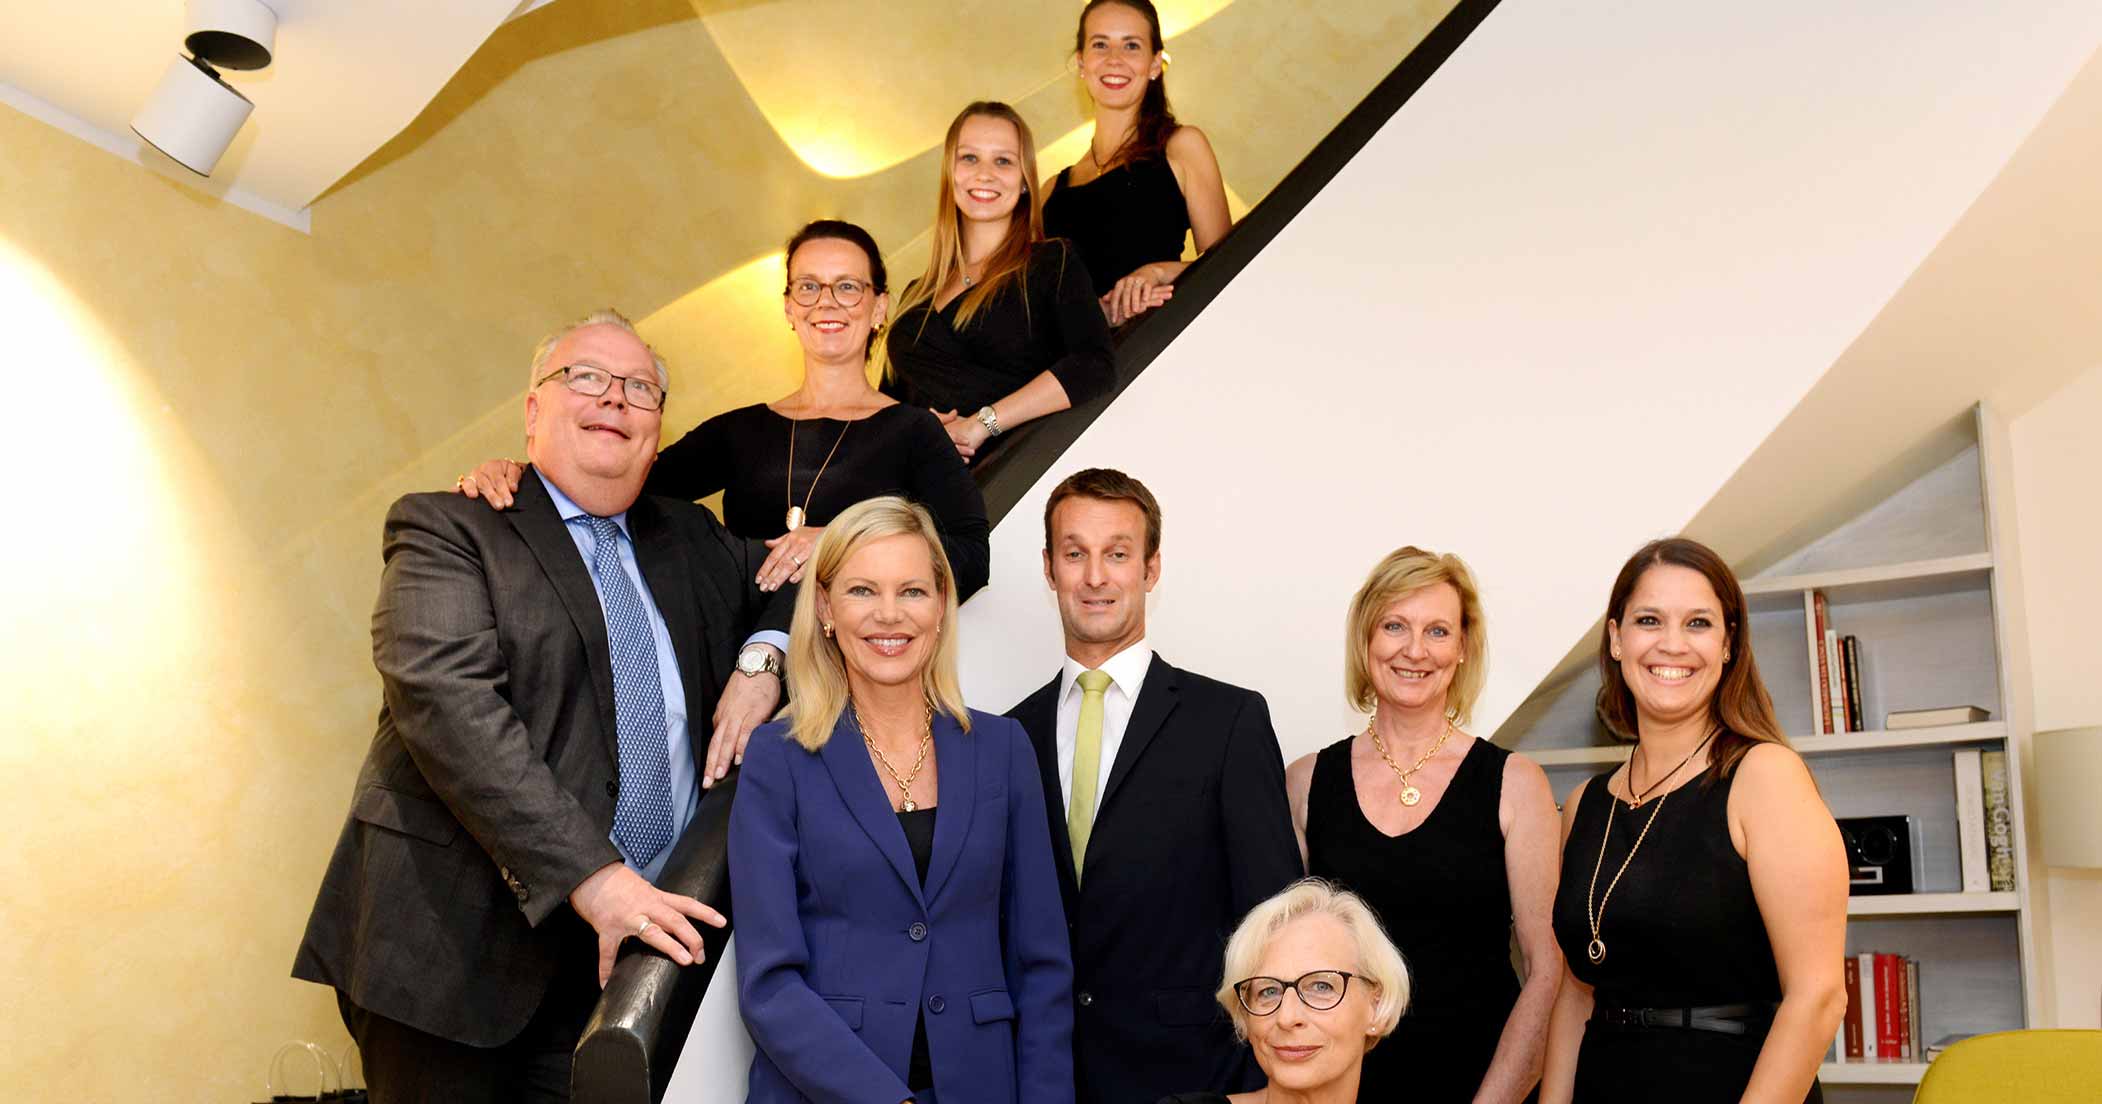 Juwelierfamilie Abeler mit Töchtern und Team, Falk Dettinger, Nina Ruge und Kristin Bellitto Abeler.